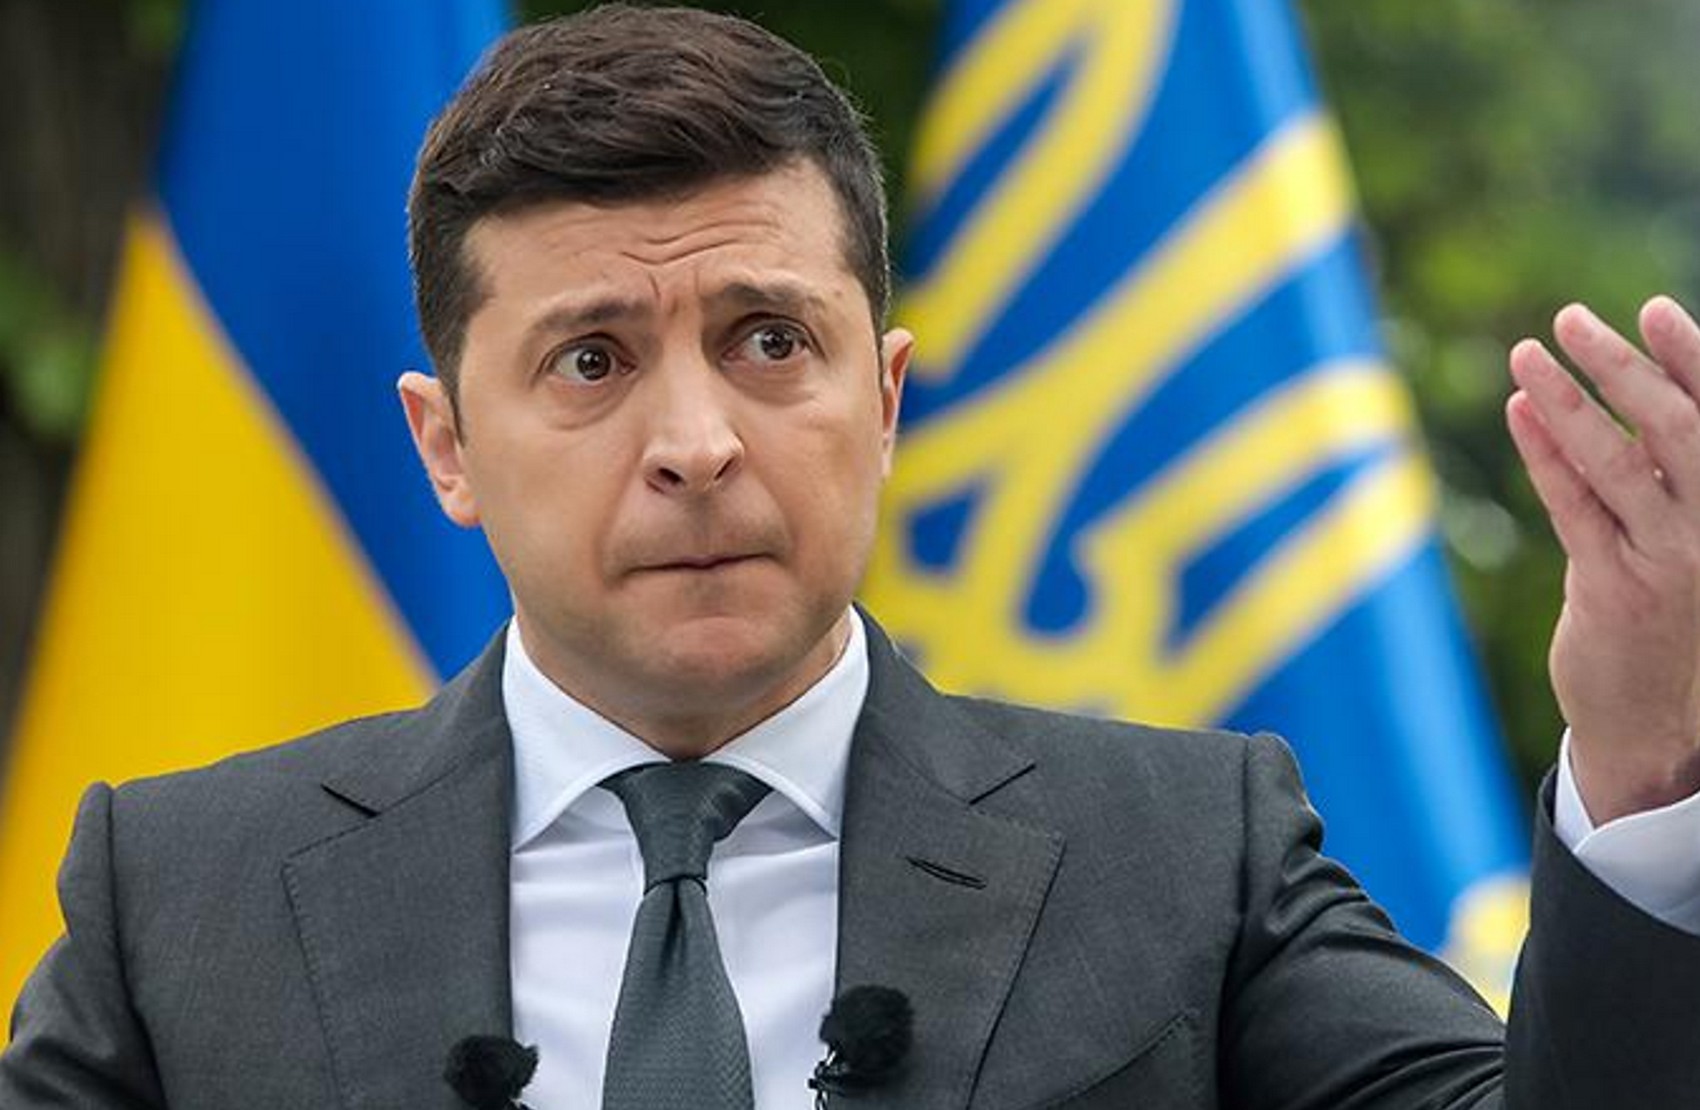 Зеленский отменил указ Януковича о назначении Тупицкого судьёй КСУ